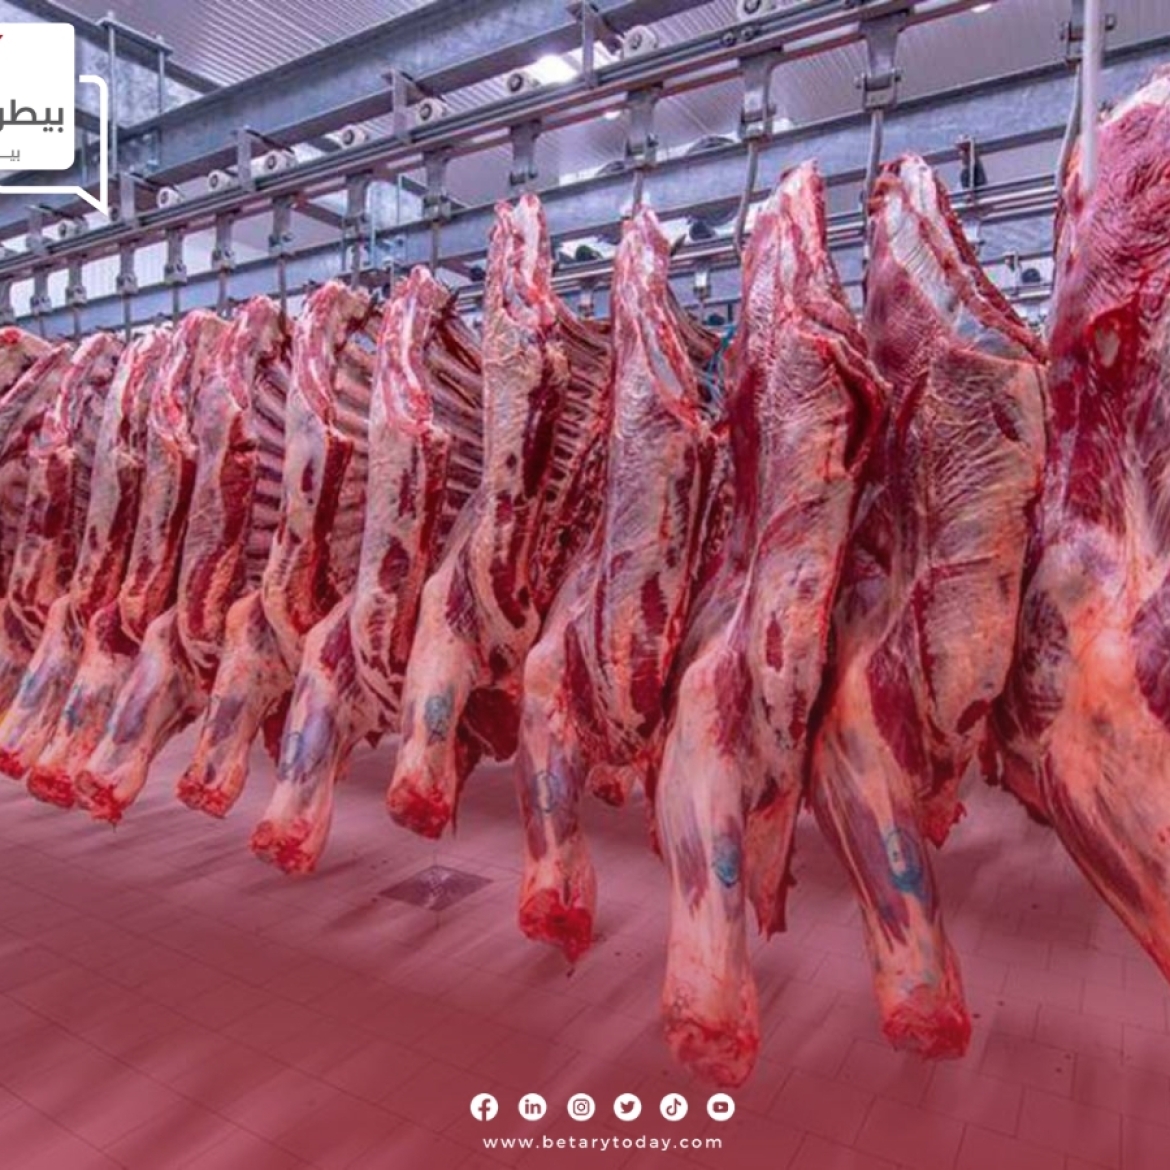 قبل أيام من العيد... تعرف على أسعار اللحوم الحمراء البلدي والمستوردة في الأسواق